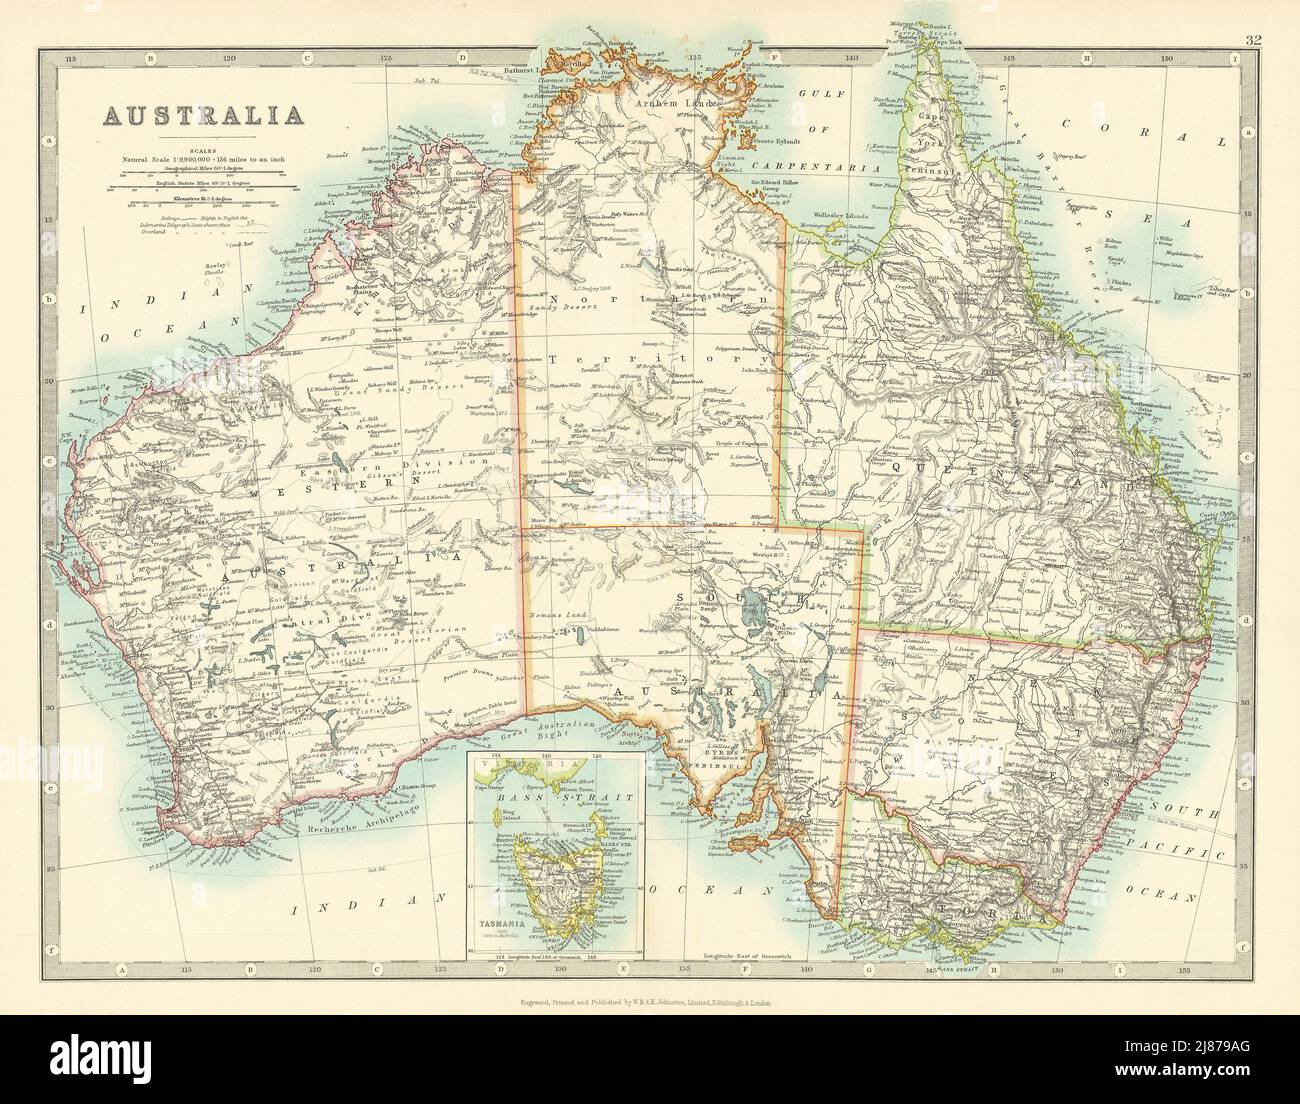 AUSTRALIE montrant les itinéraires des explorateurs et les champs aurifères. CARTE JOHNSTON 1911 Banque D'Images